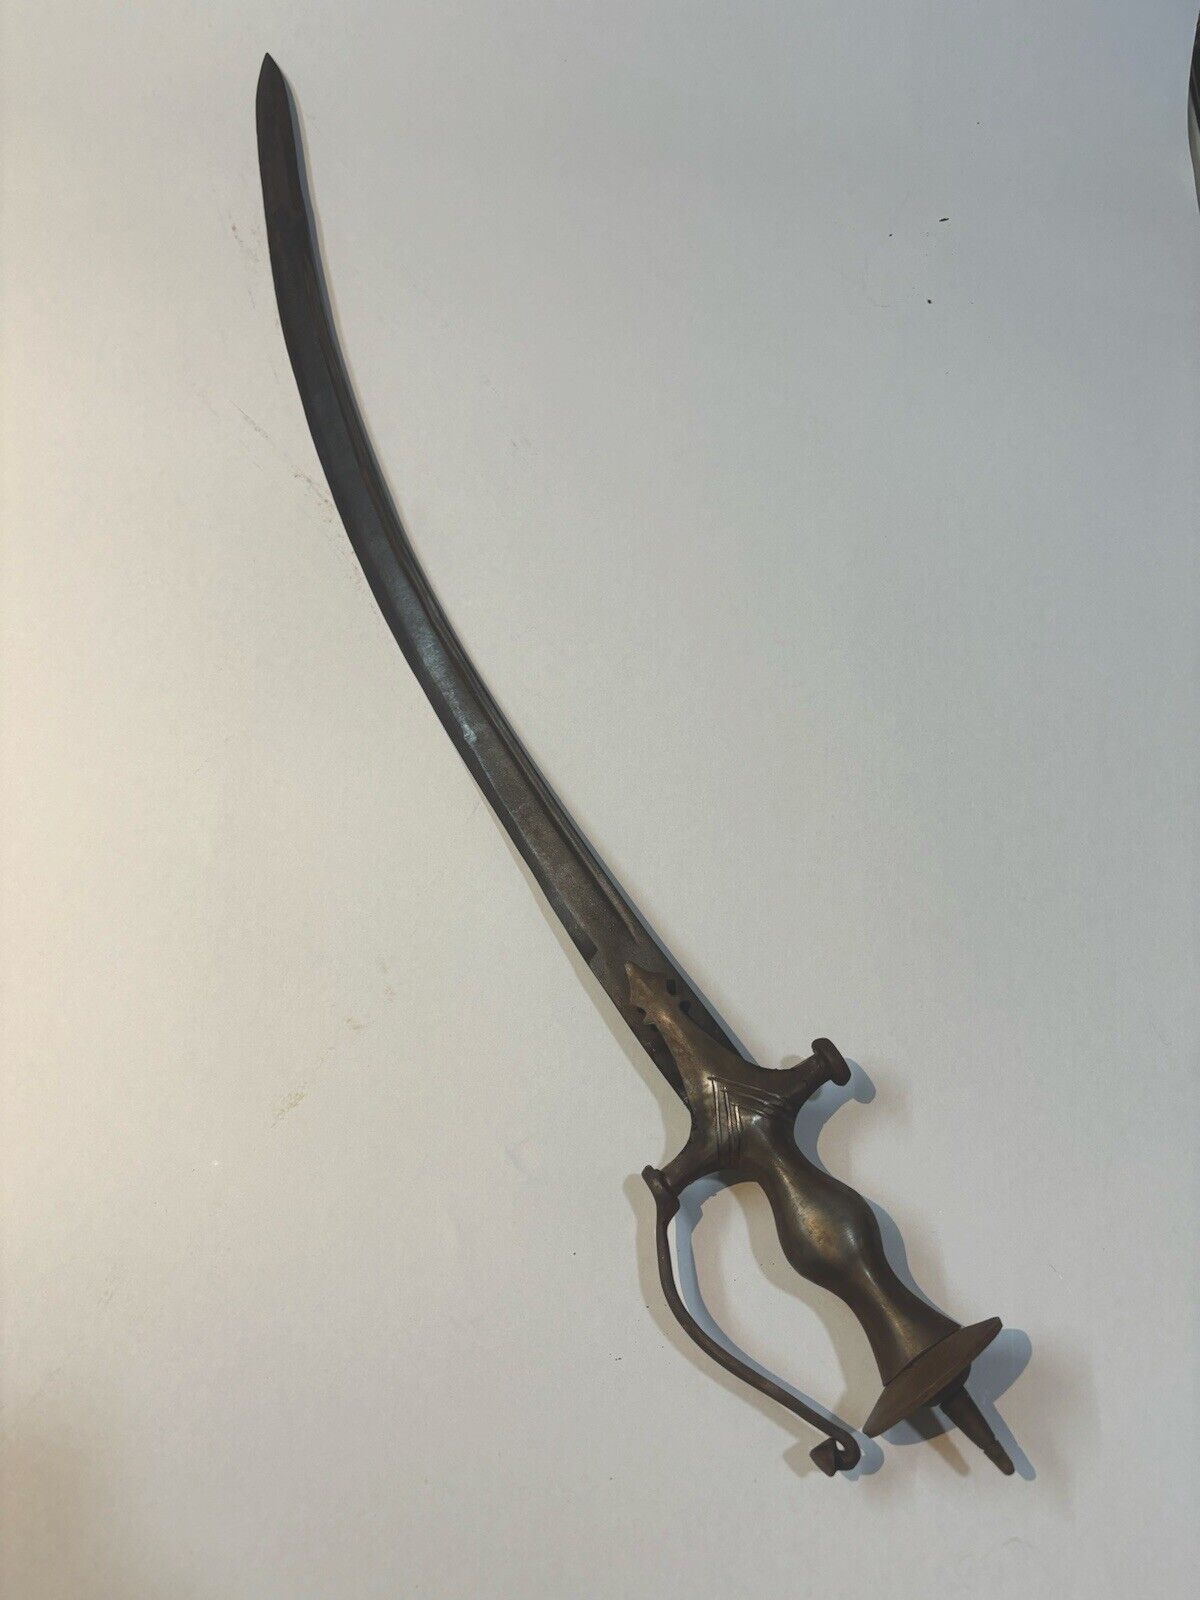 Antique 1922 Shamsheer Shamshir Sword Tulwar Vintage Old Rare Collectible